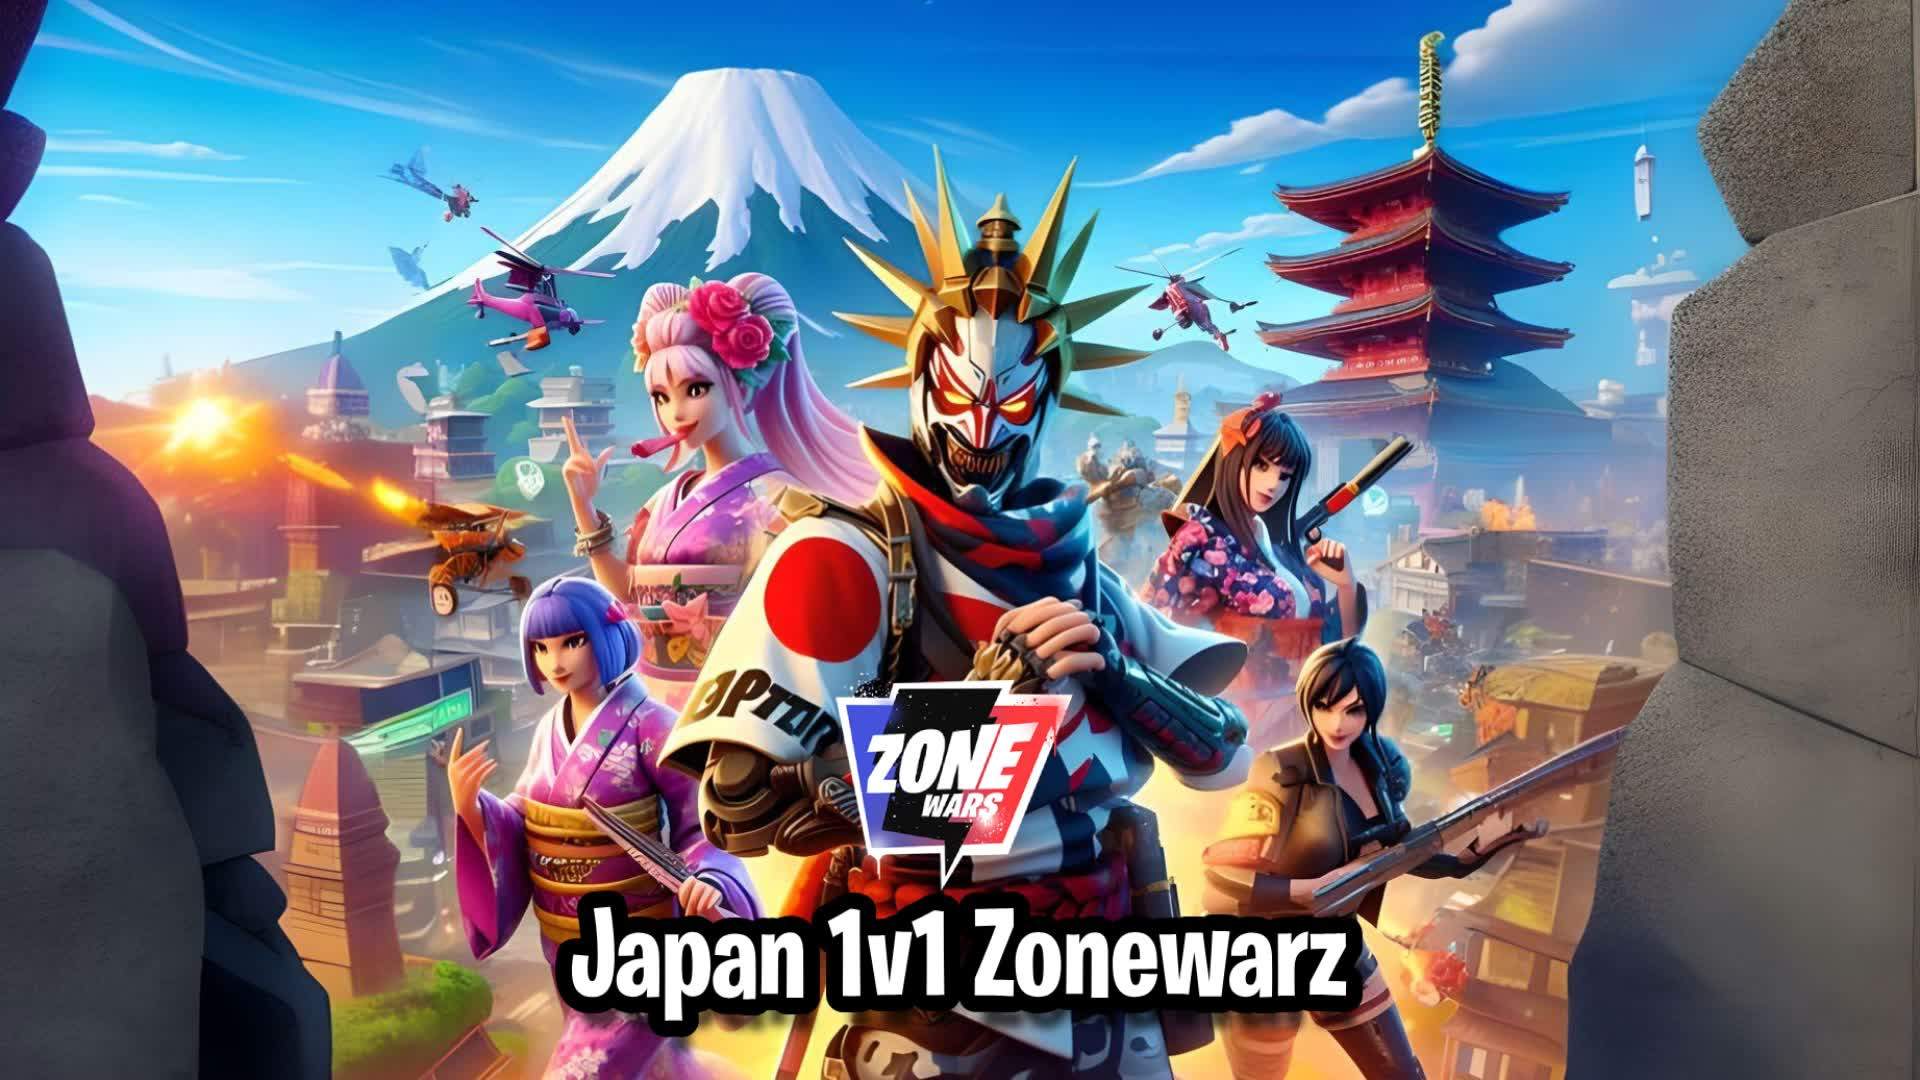 Japan 1v1 Zonewarz